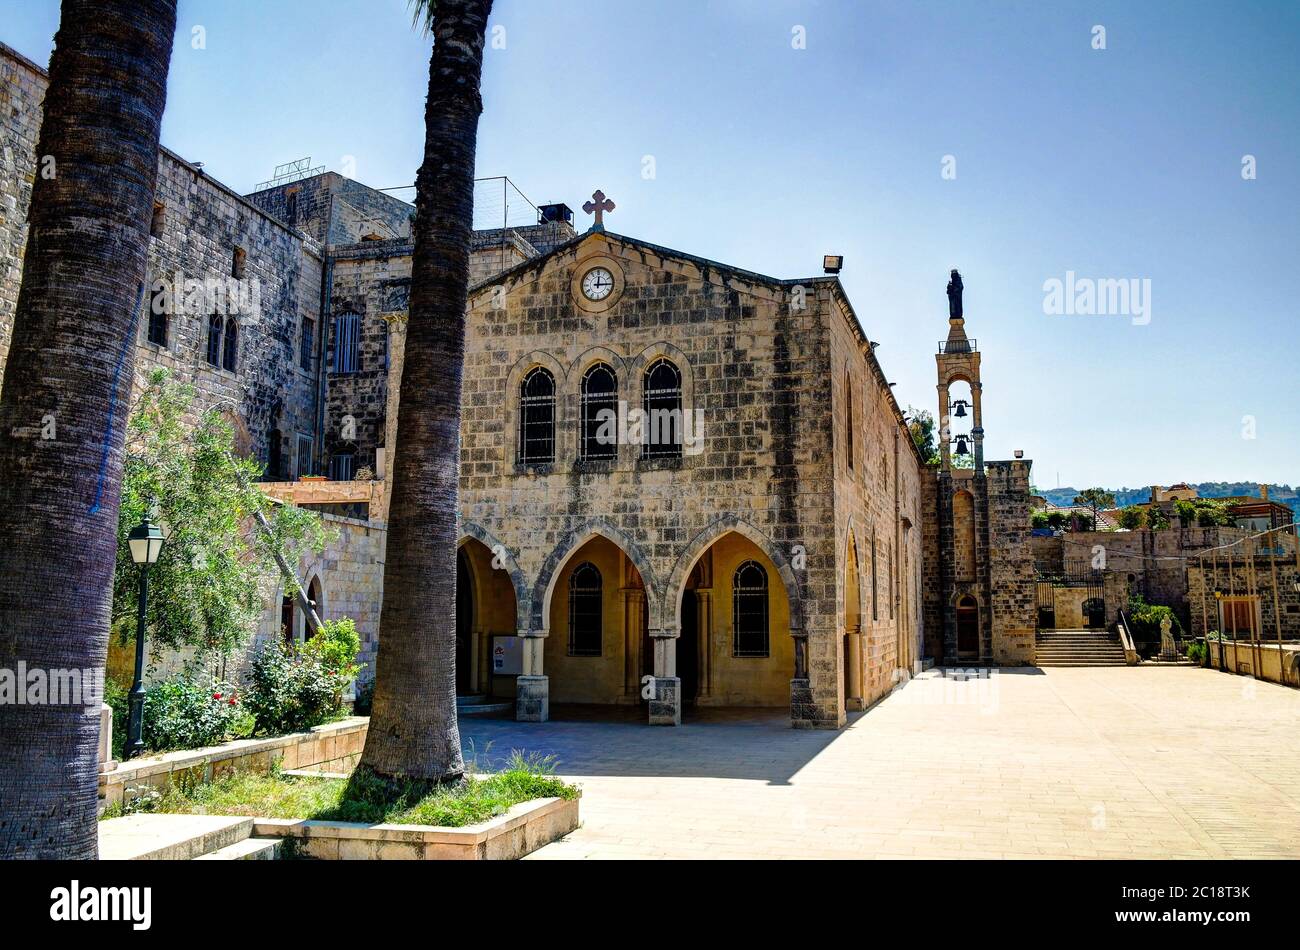 Saydet Al Talle Church at Deir al Qamar, Lebanon Stock Photo